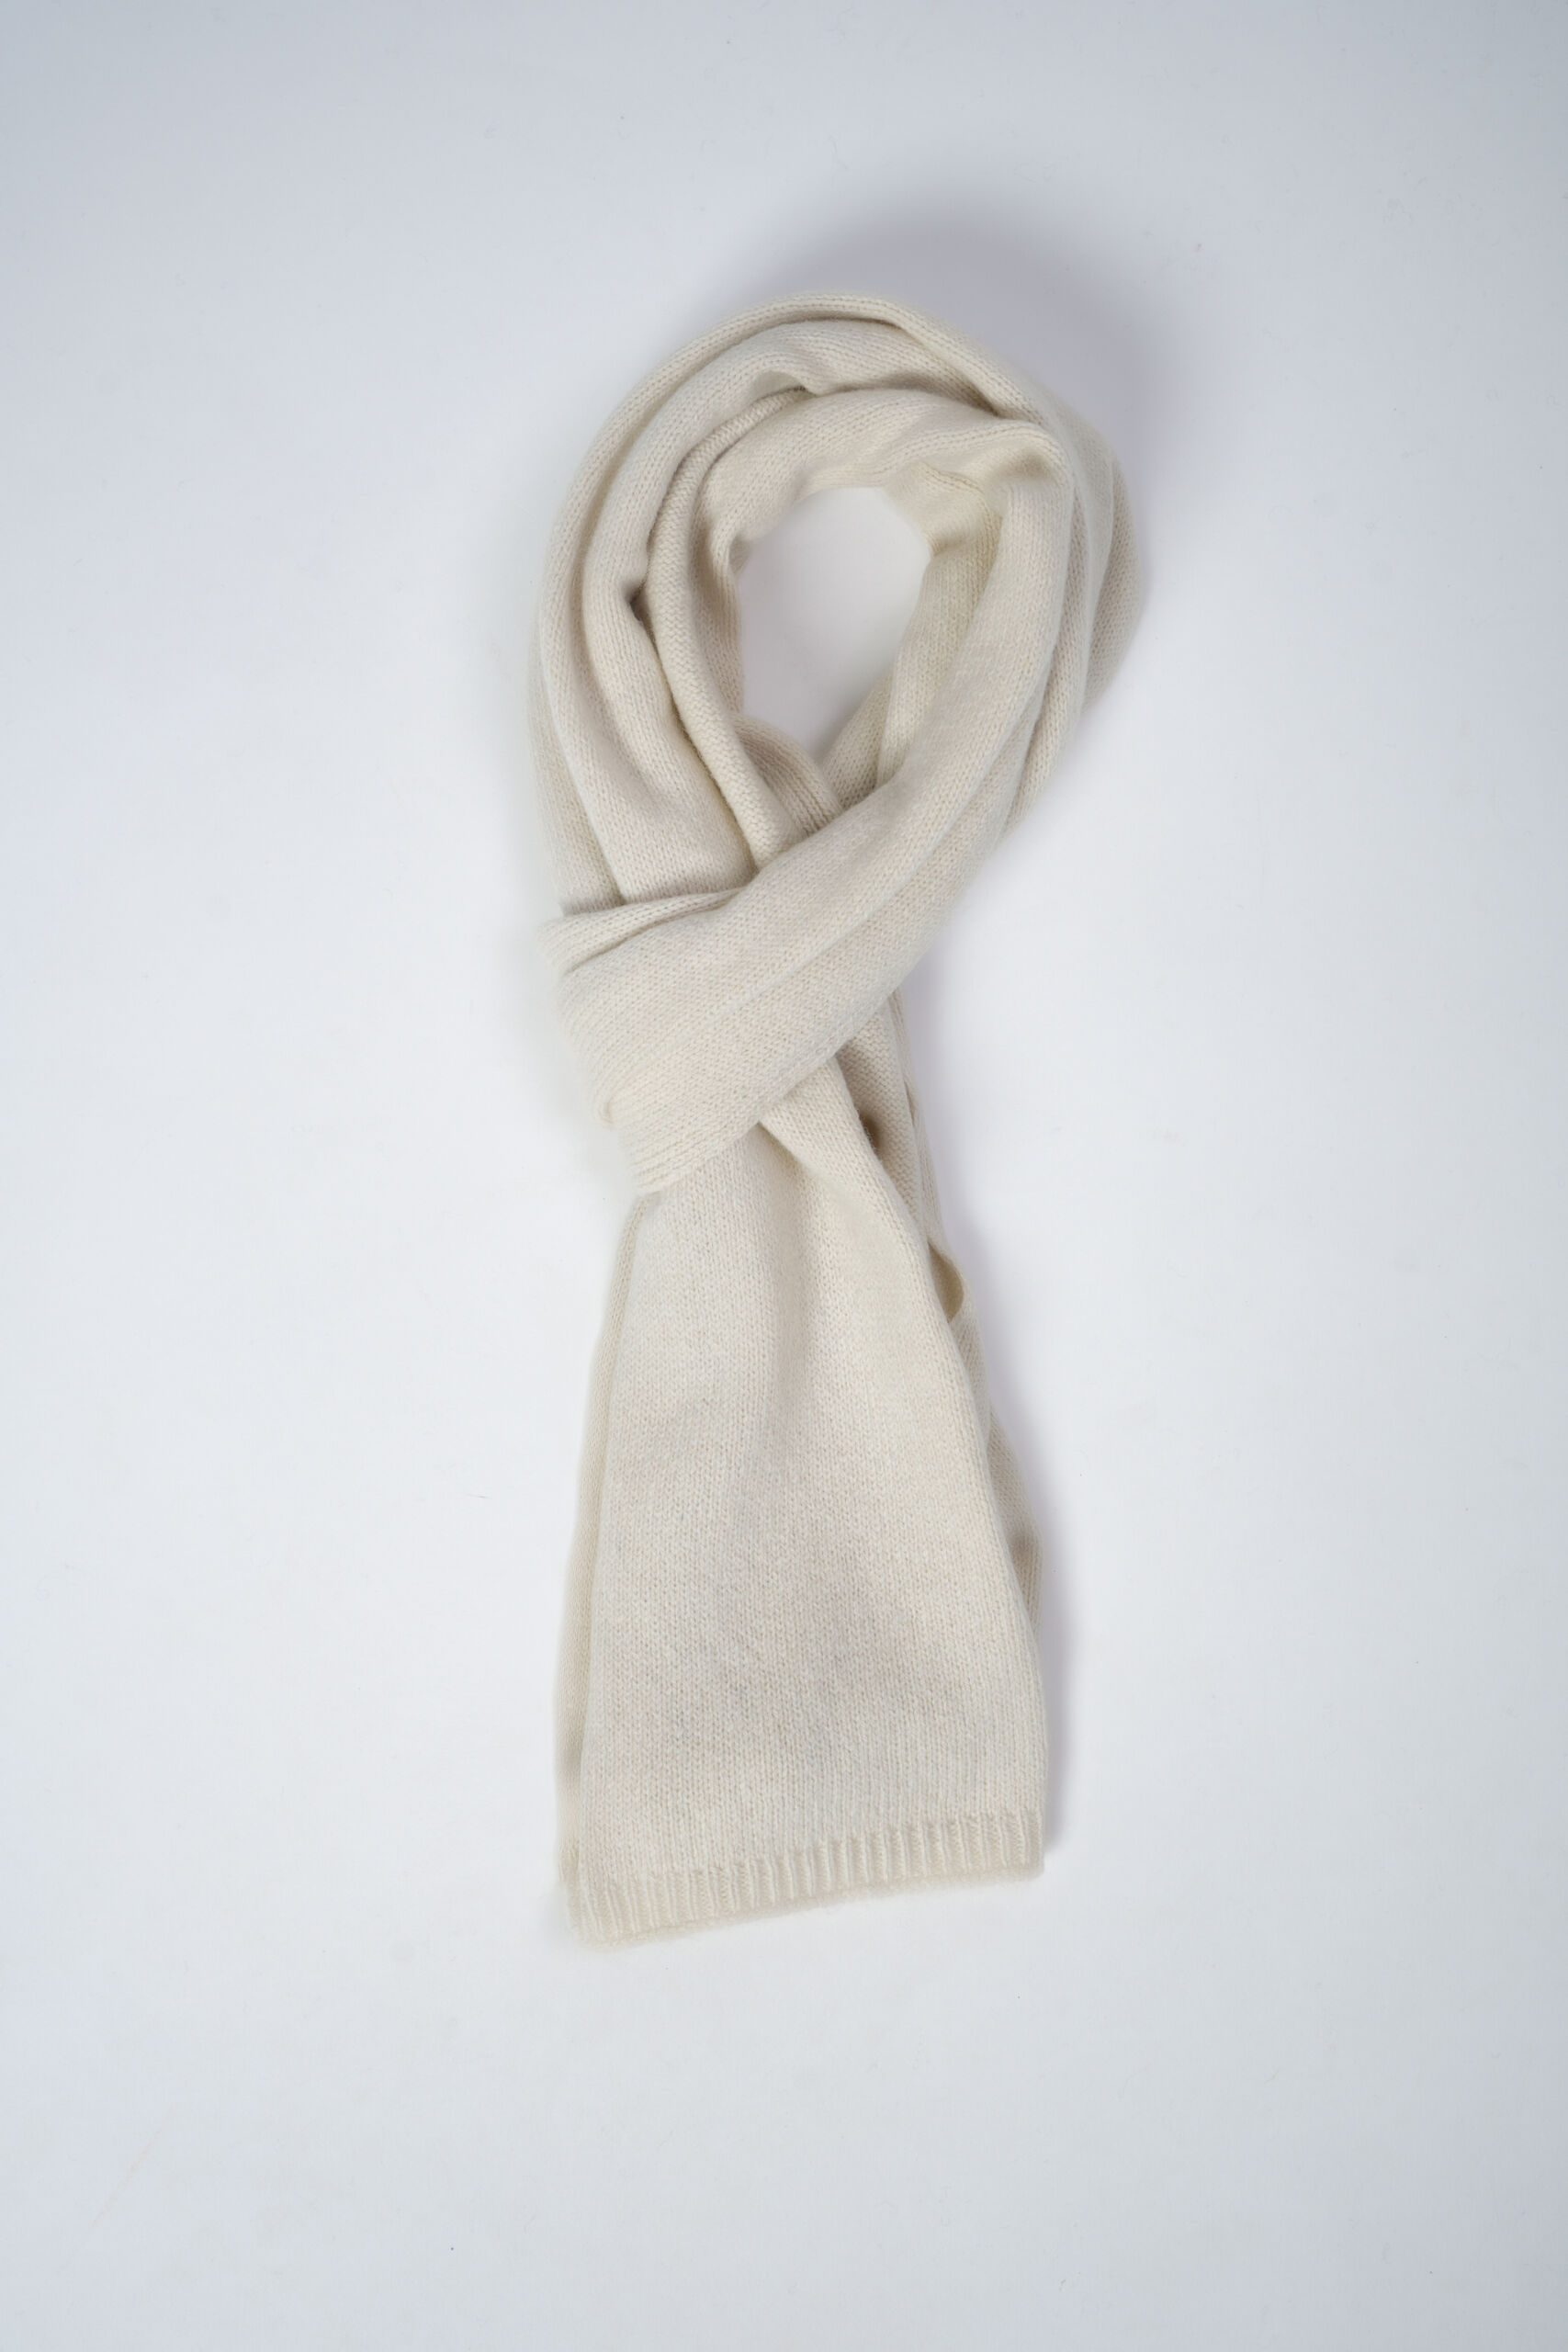 Trento Bianco 2 scaled 1stAmerican sciarpa da uomo 100% cashmere misura 30 x 180 - sciarpa invernale in puro cashmere 100% Made in Italy